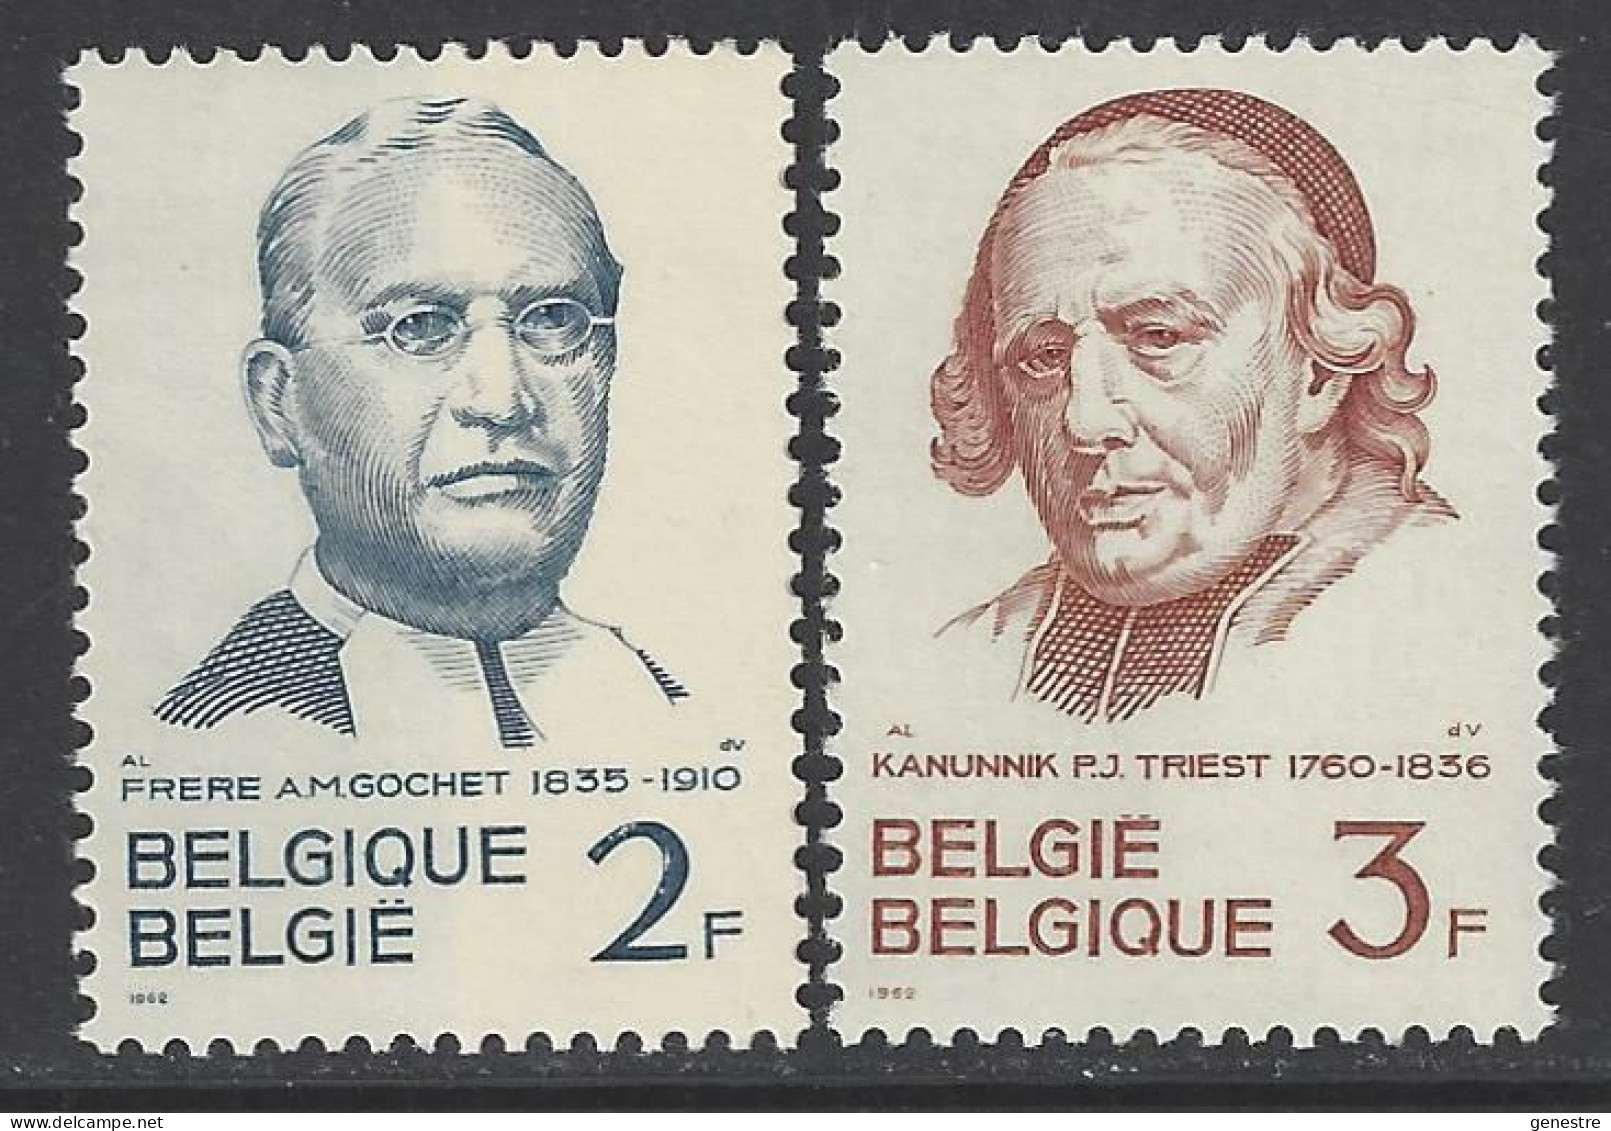 Belgique - 1962 - COB 1214 à 1215 ** (MNH) - Neufs